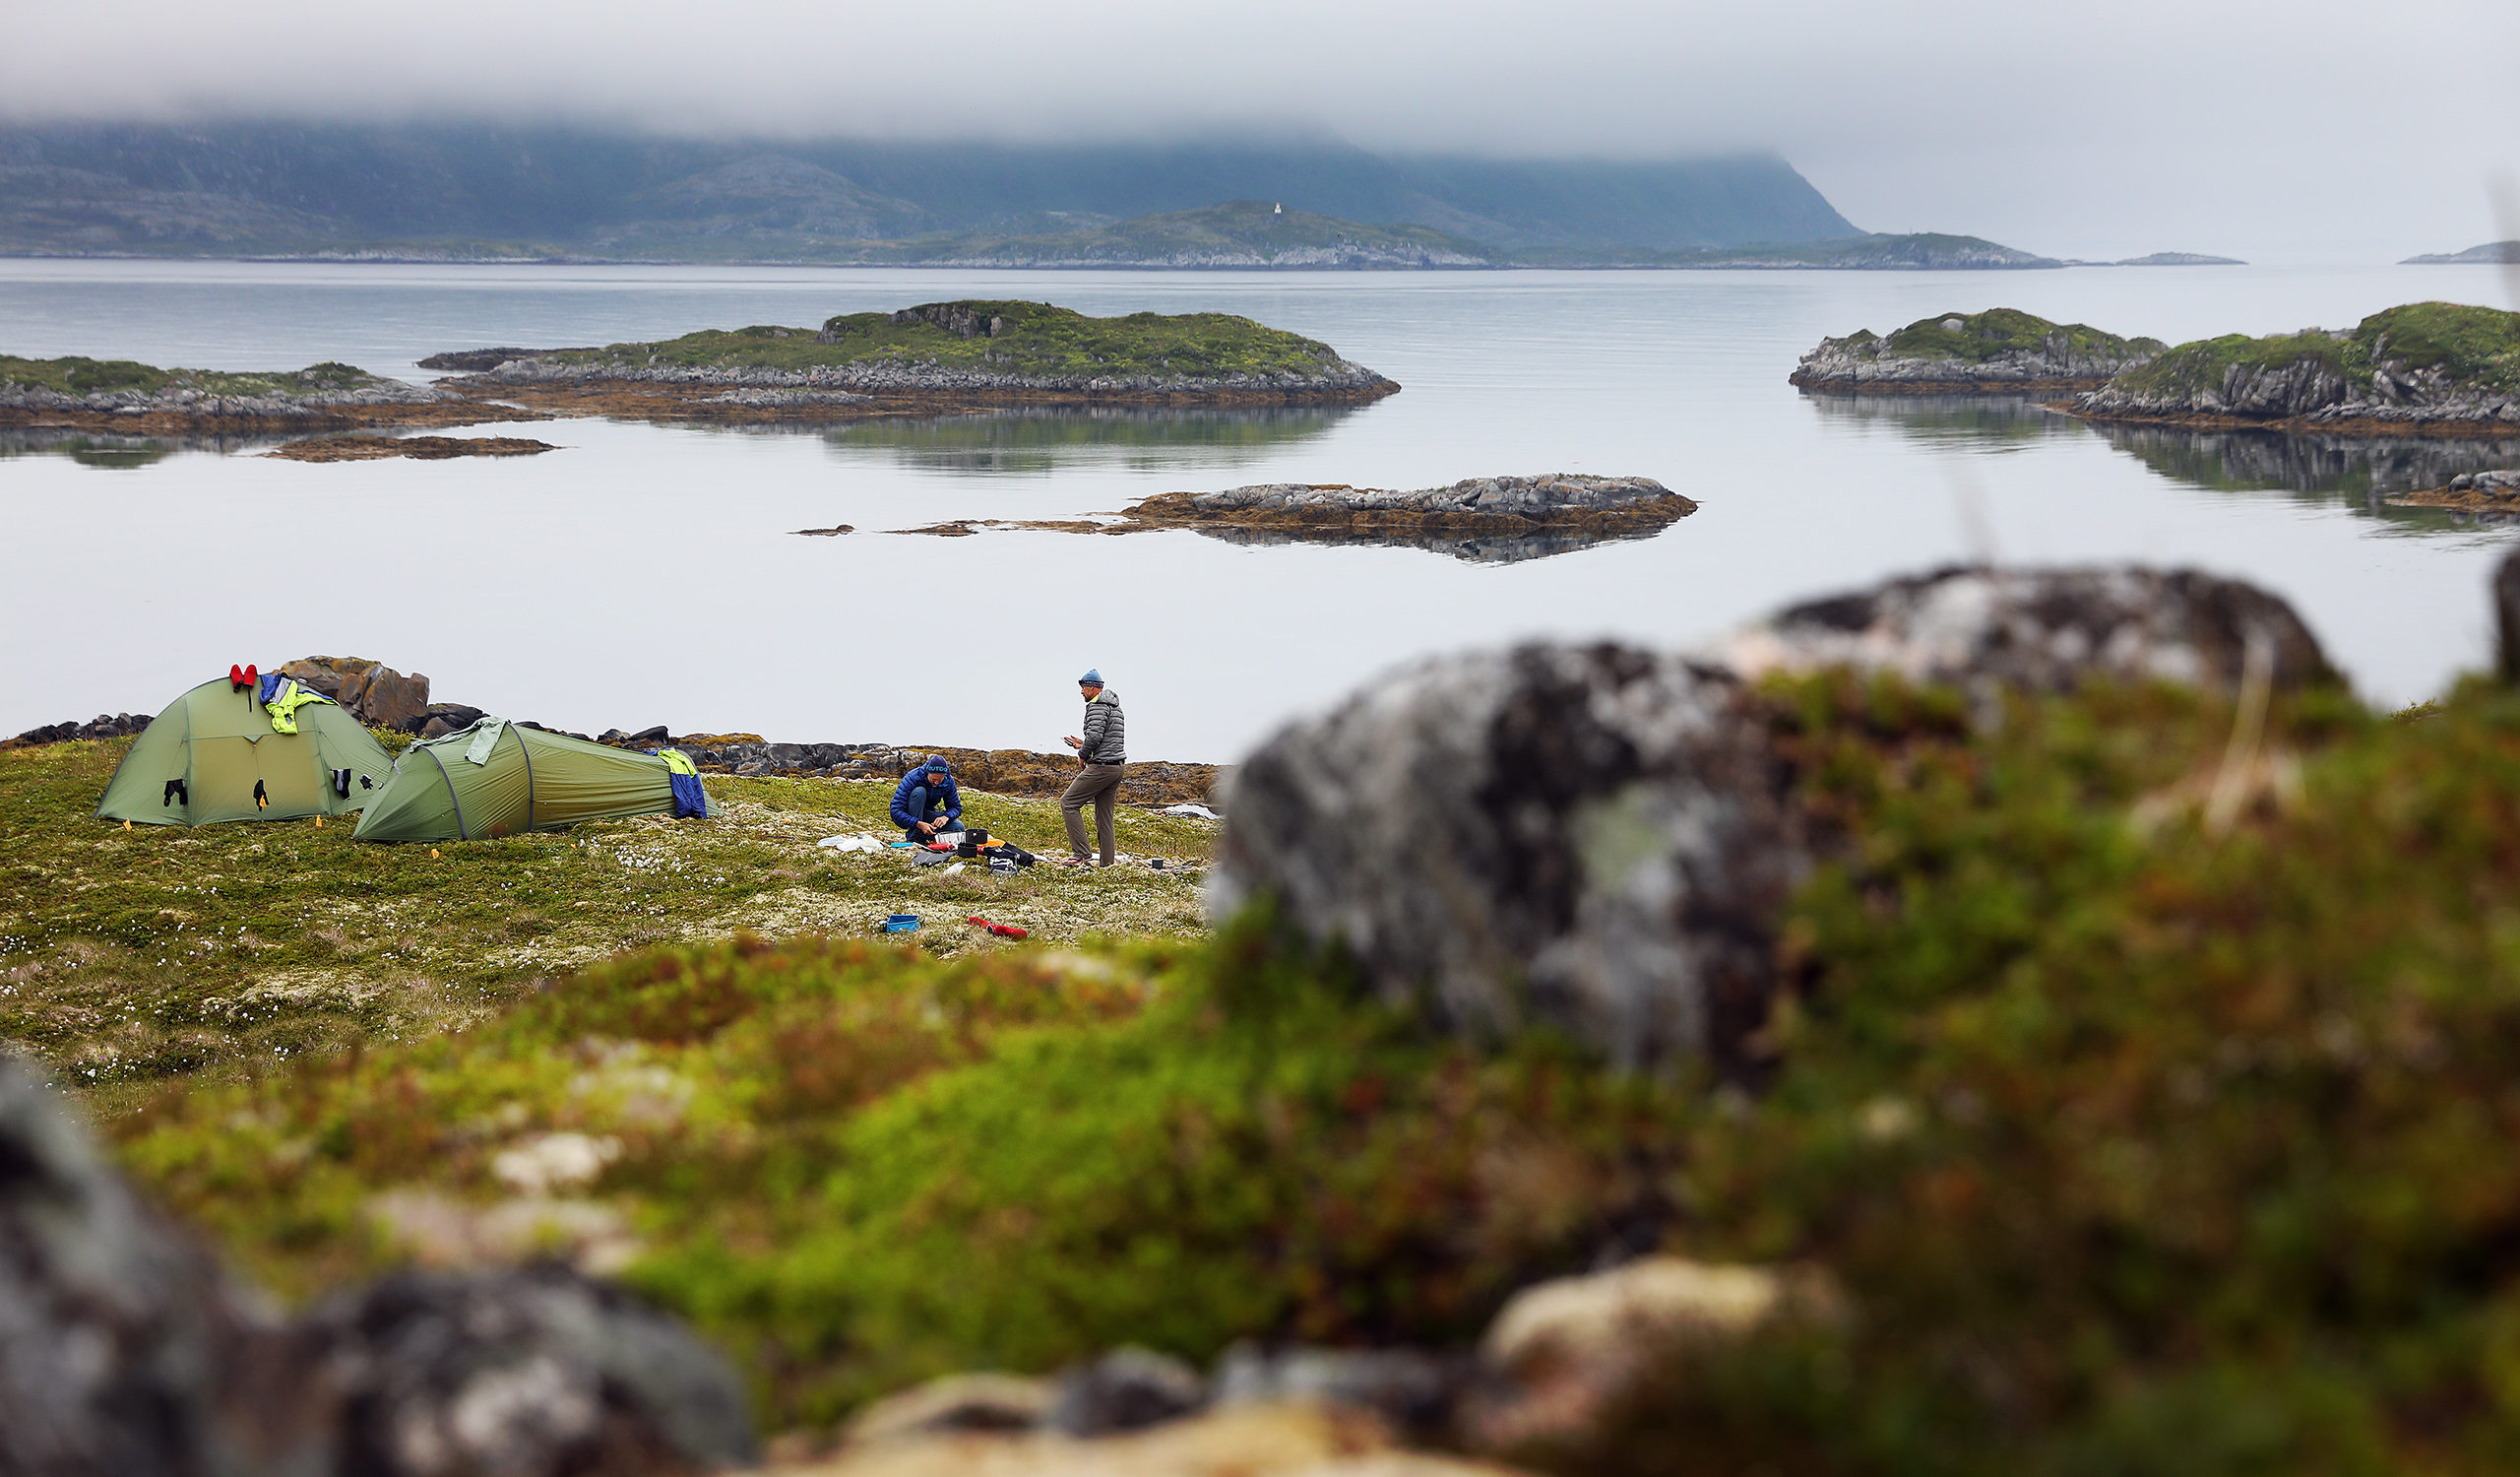 Abenteuerreise mit SUP's unter der Mitternachtssonne auf den Inseln Rebbenesøya, Grøtøya und Nordkvaløya in einer Region mit reiner unberührter Natur und sehr wenig Zivilisation. Sie reisen mit einem relativ neuen Transportmittel unter dem einzigartigen Licht der Mitternachtssonne und versuchen, Bilder von einem der herausragendsten Orte der Erde zu erforschen und mit anderen zu teilen.